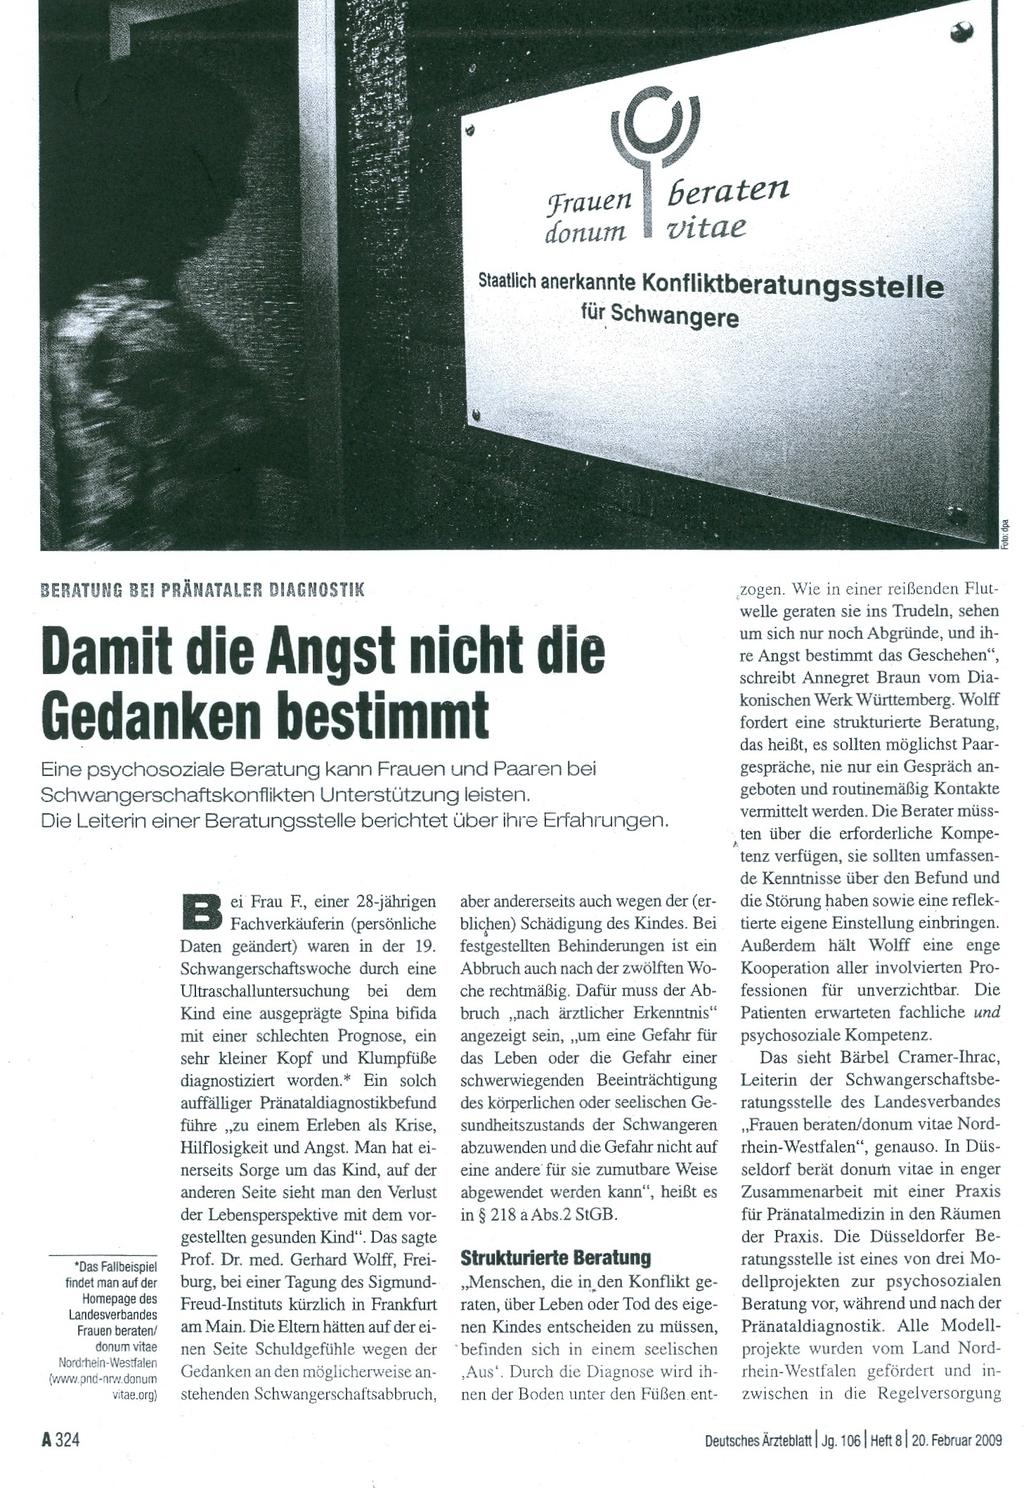 Deutsches Ärztblatt/20.